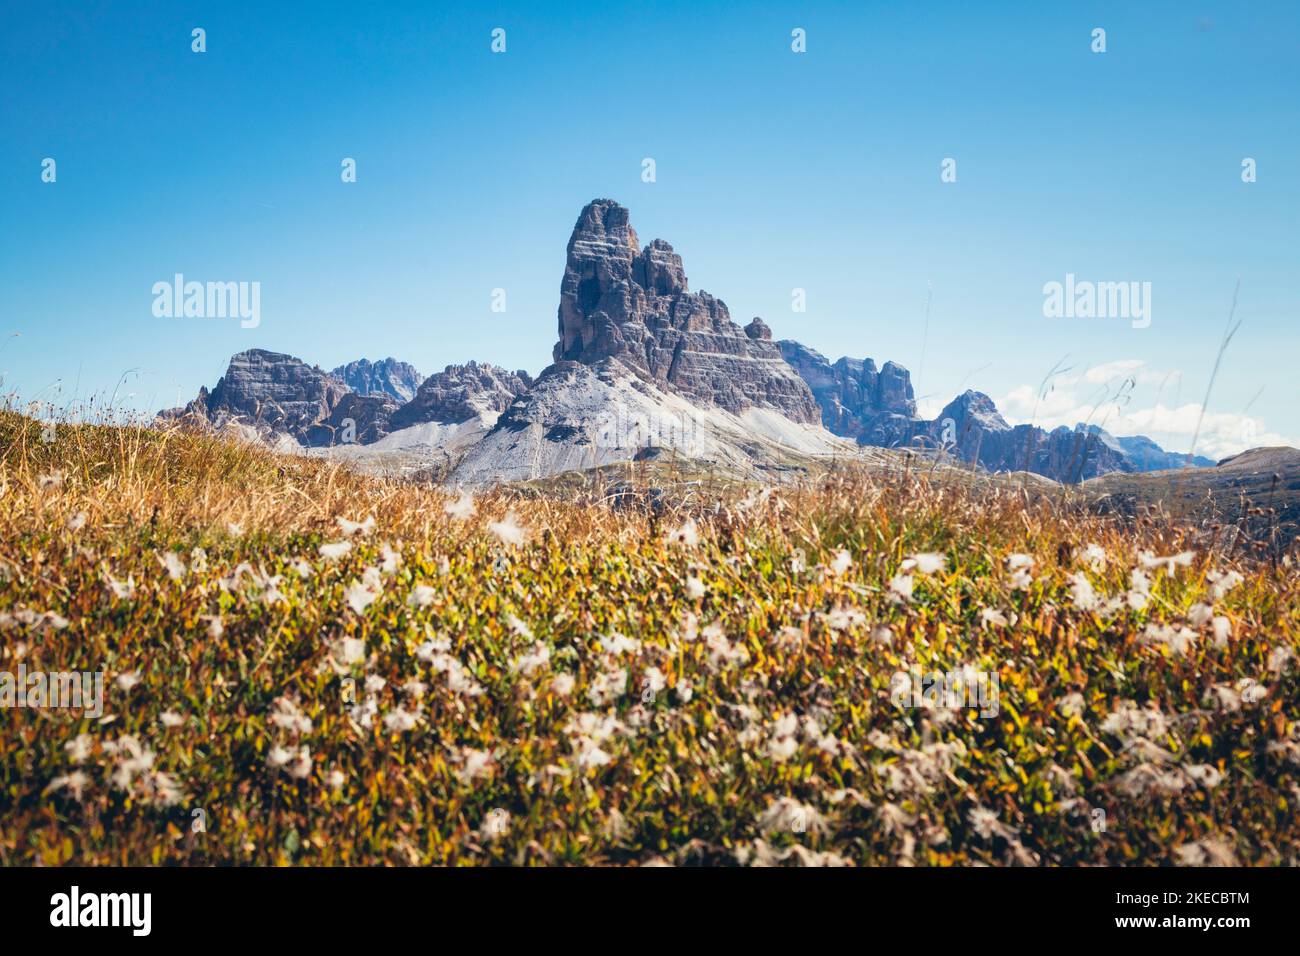 Italia, Véneto, Auronzo di Cadore. El Tre Cime di Lavaredo, visto desde el Monte Piana, Dolomitas Foto de stock